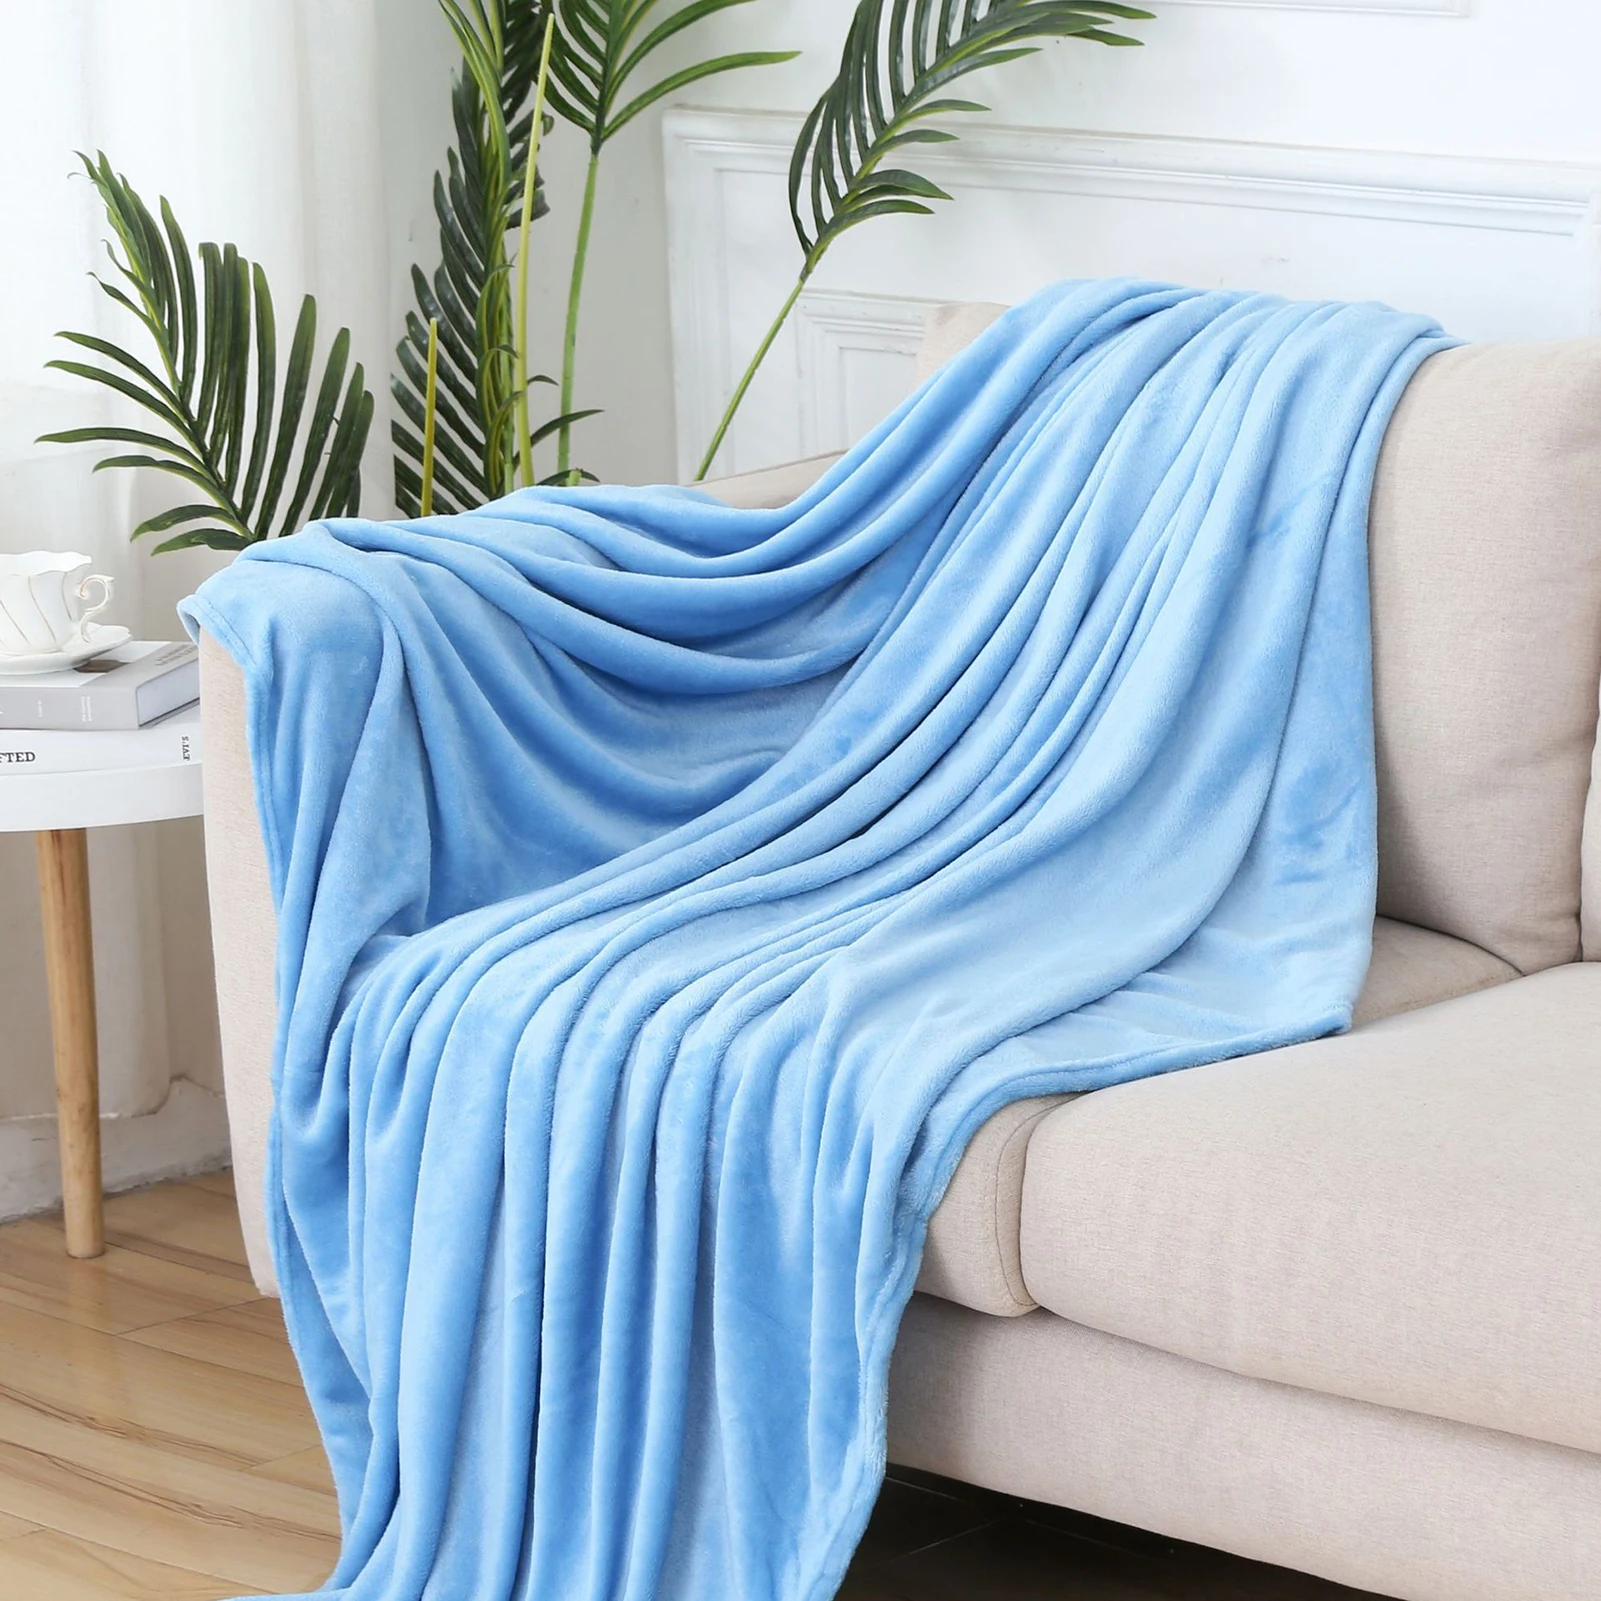 

180*200cm Pure Color Blanket Flannel Gift Blanket Coral Velvet Air Conditioning Blanket Towel Blanket Nap Blanket for Home